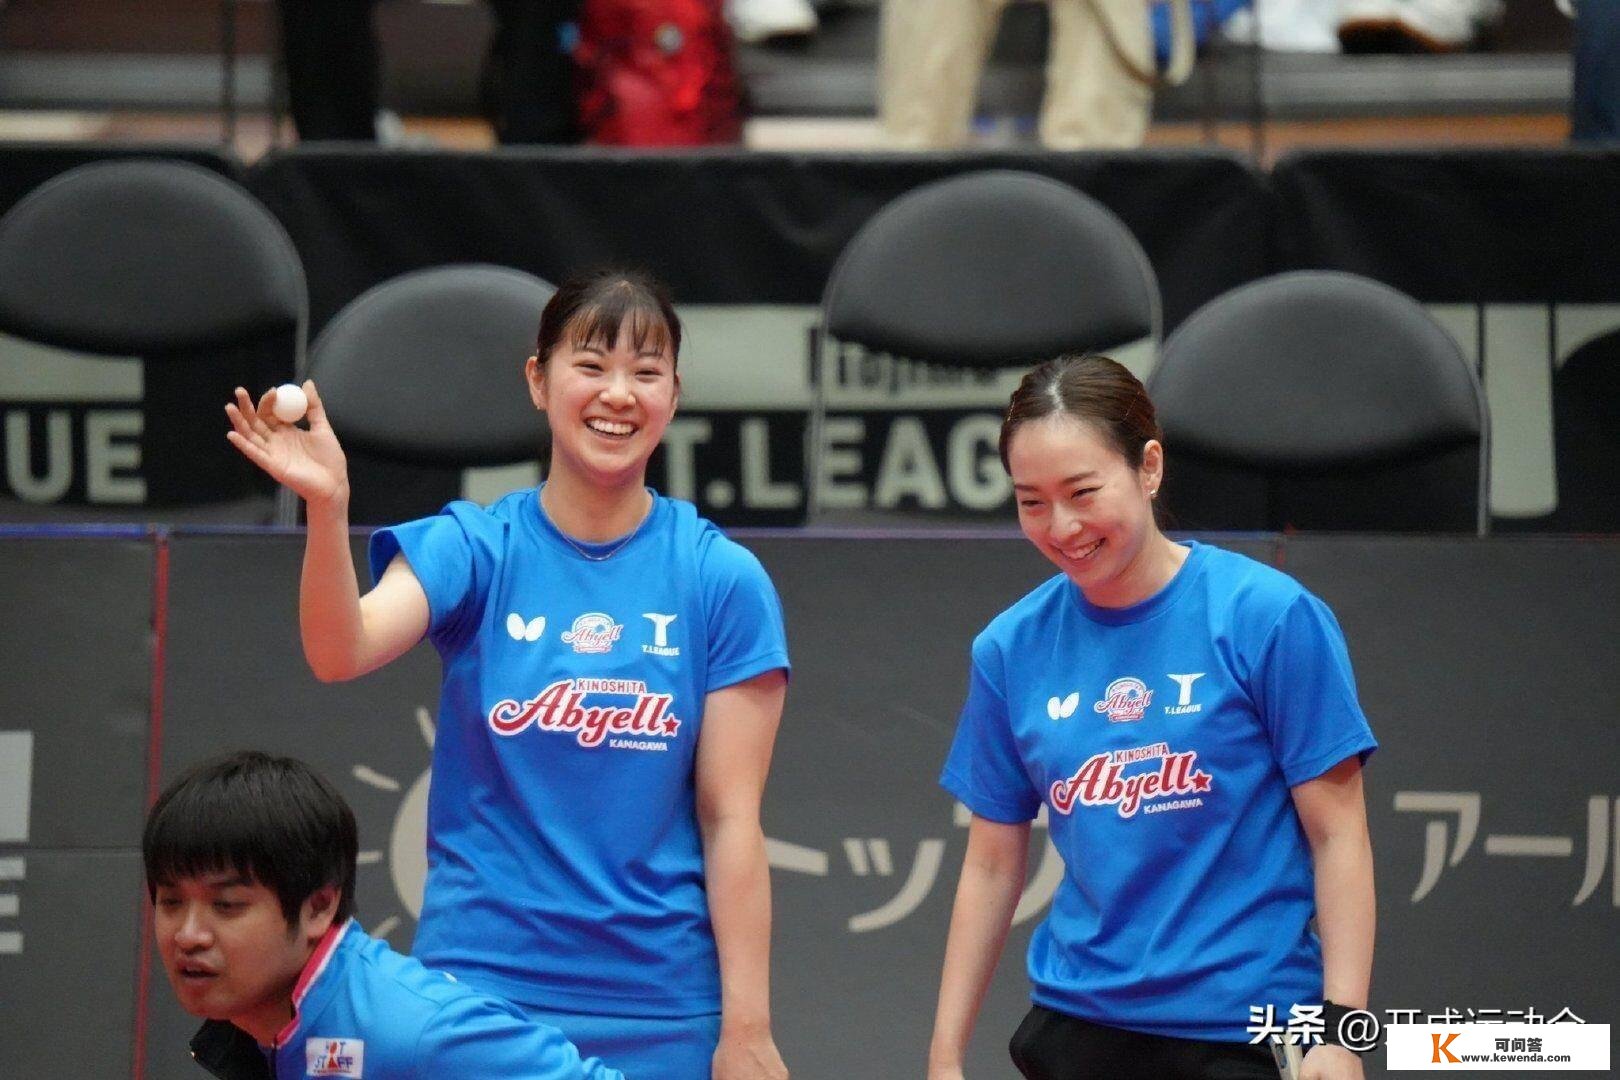 乒乓球选手石川佳纯11-2战胜强敌！粉丝：纯美，你能不克不及成为“中国媳妇”